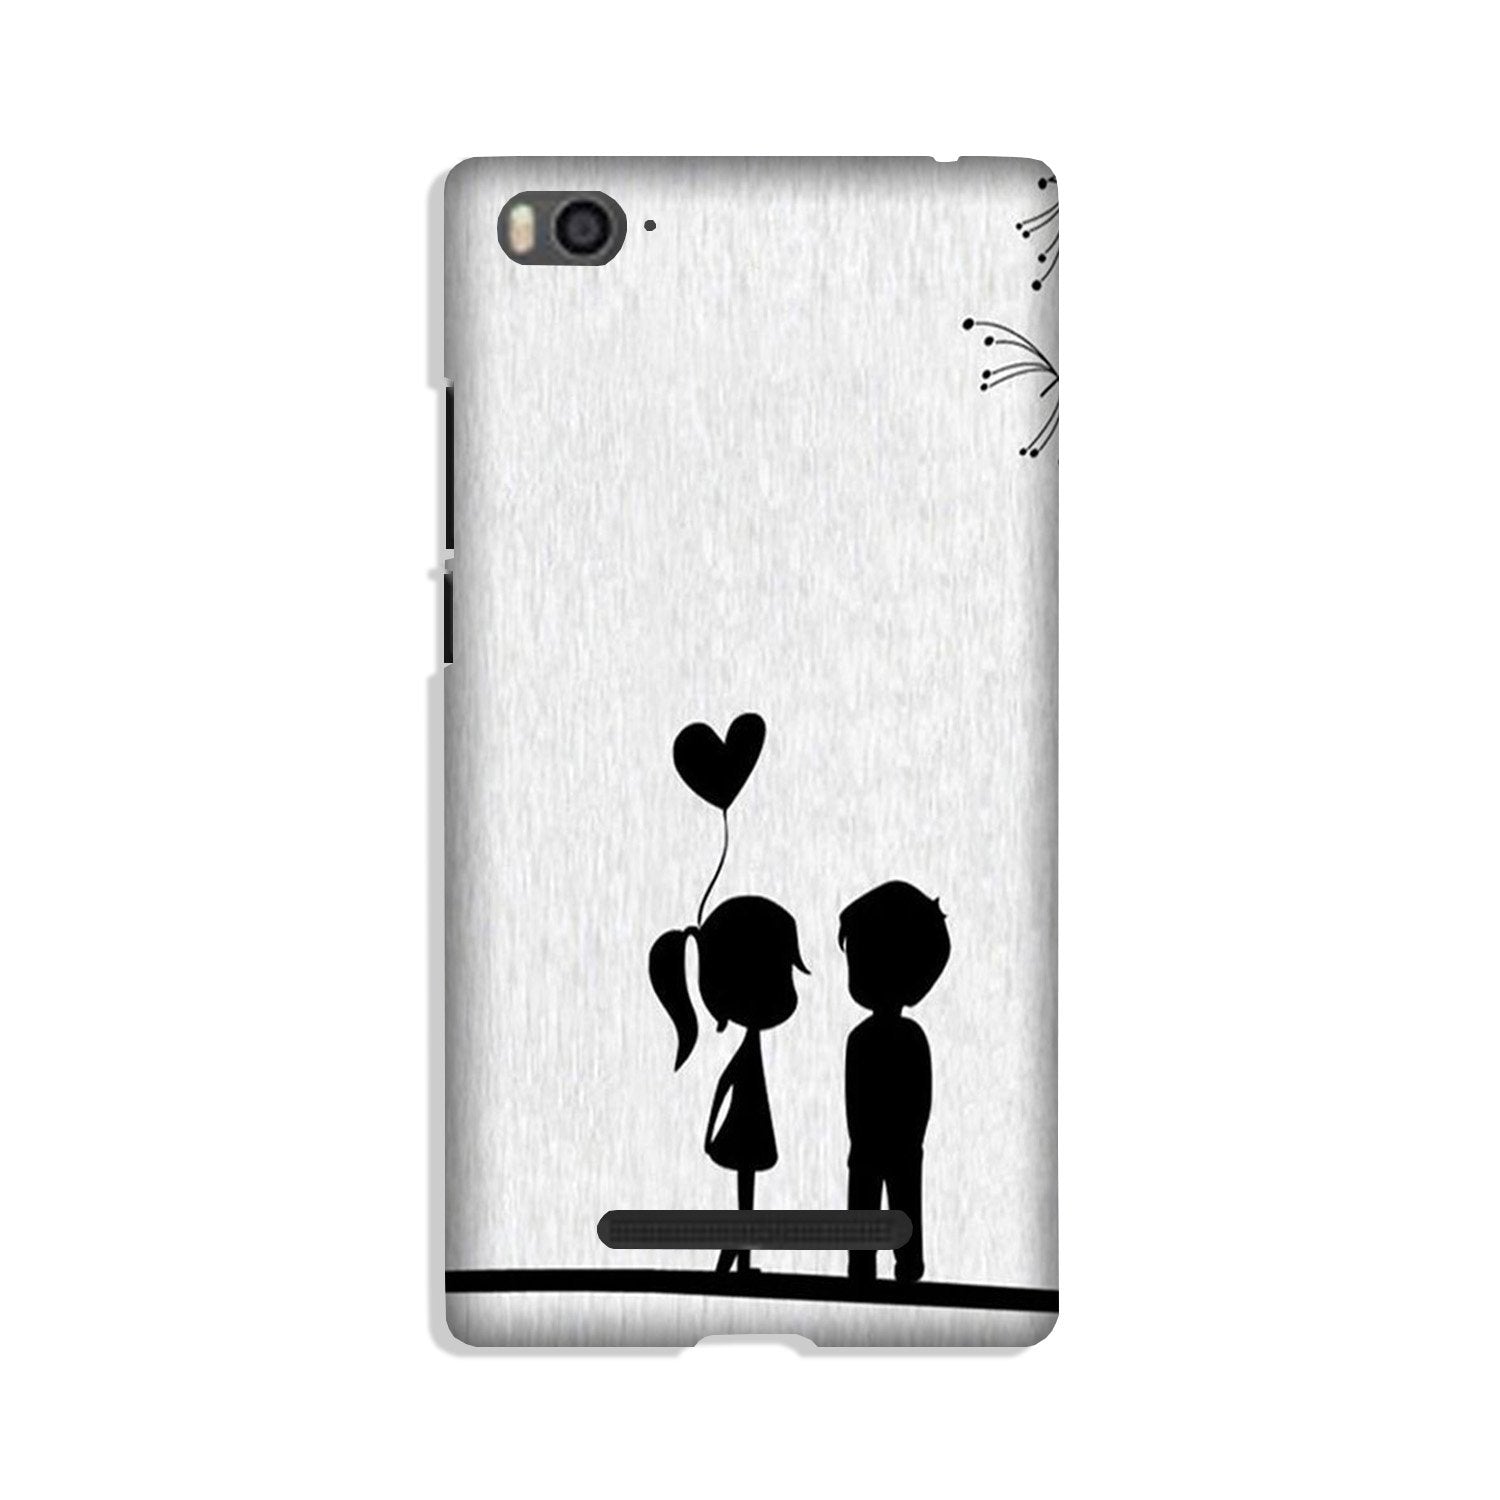 Cute Kid Couple Case for Xiaomi Mi 4i (Design No. 283)